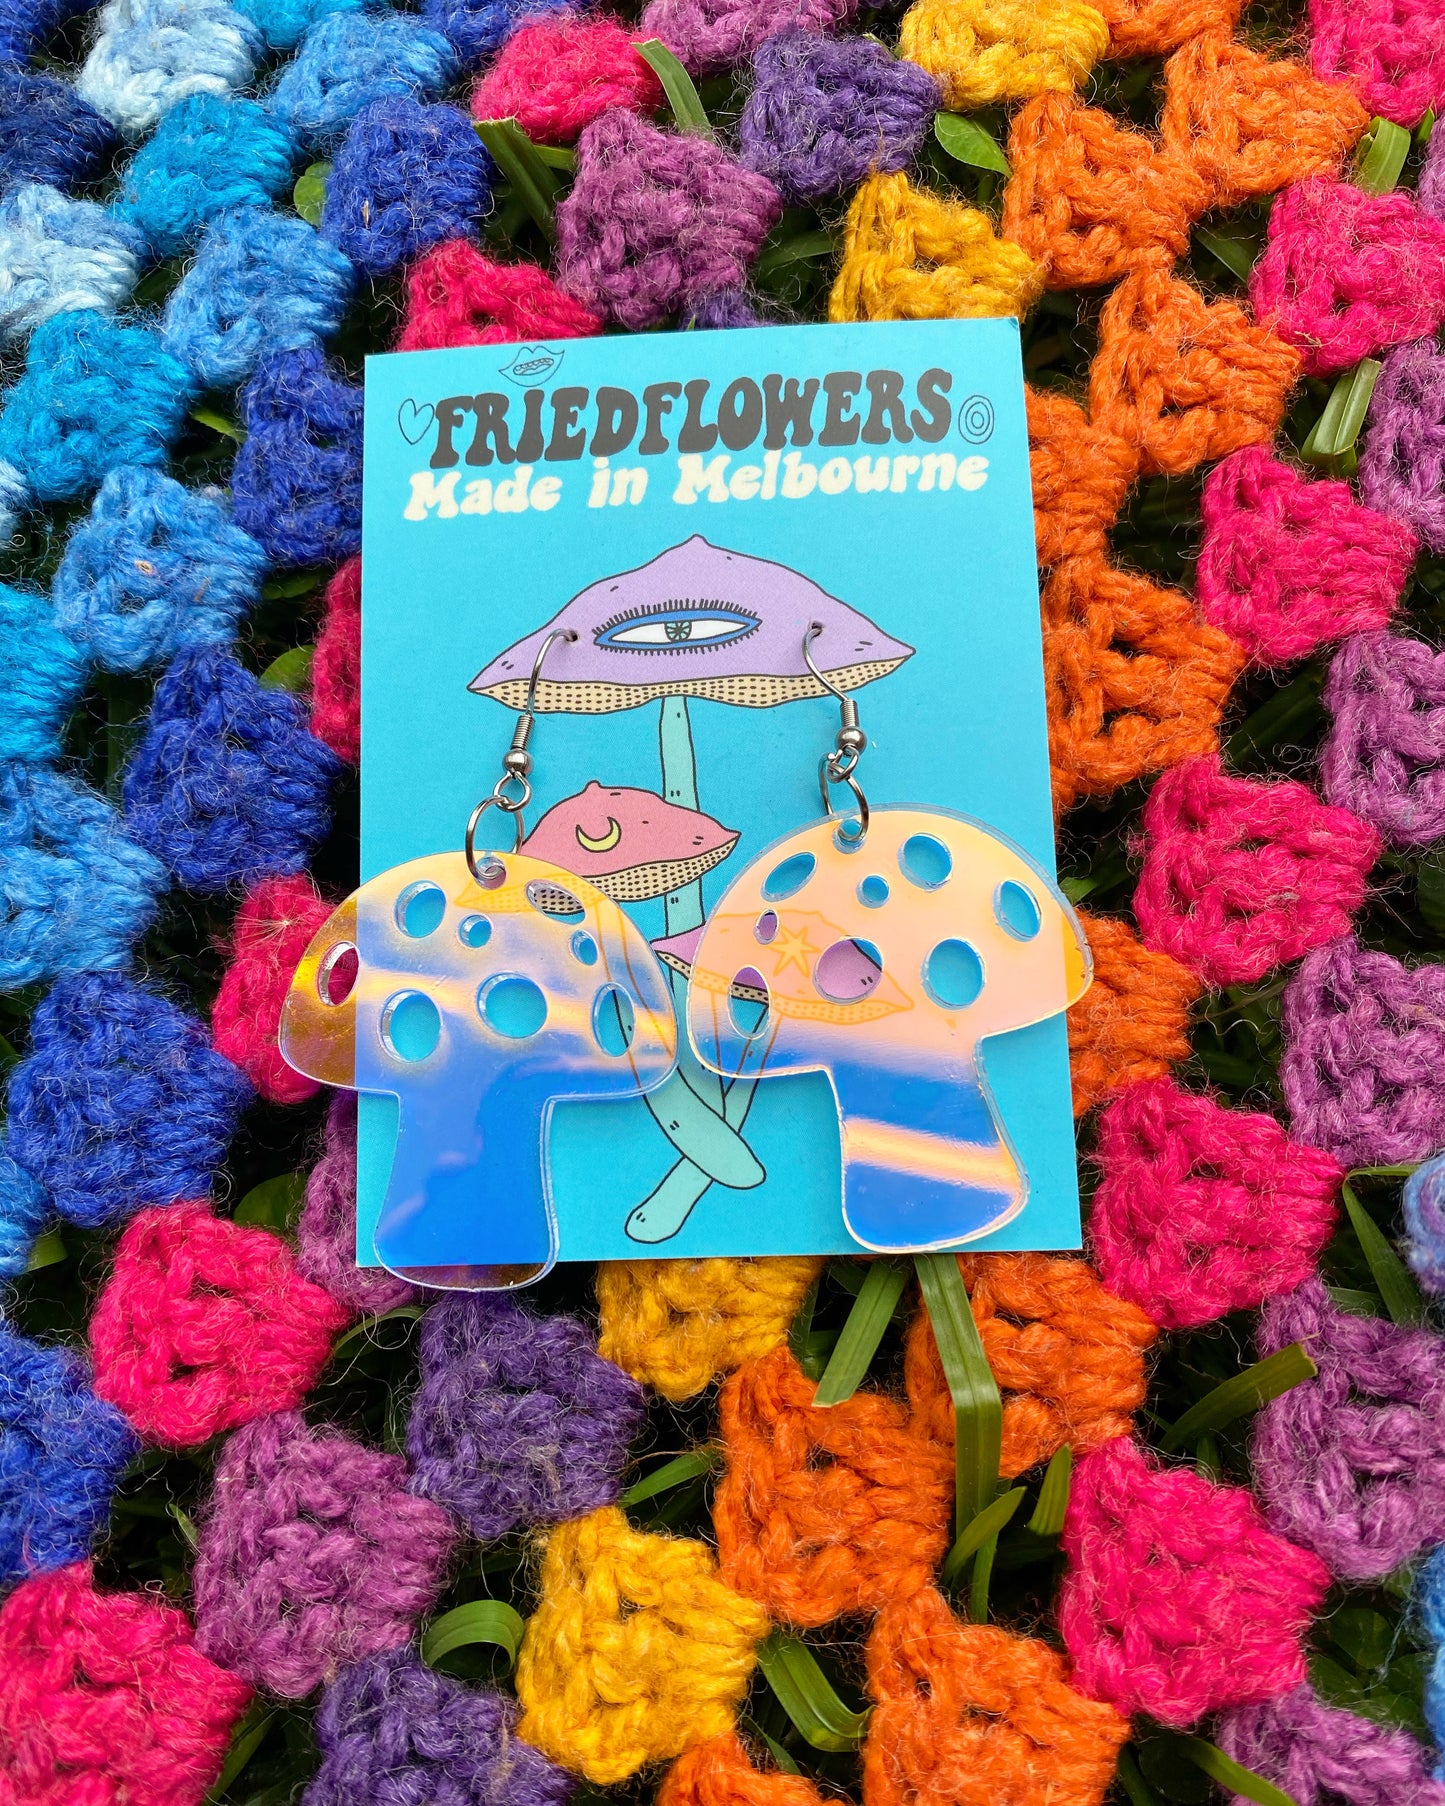 Tiny Mushroom Earrings